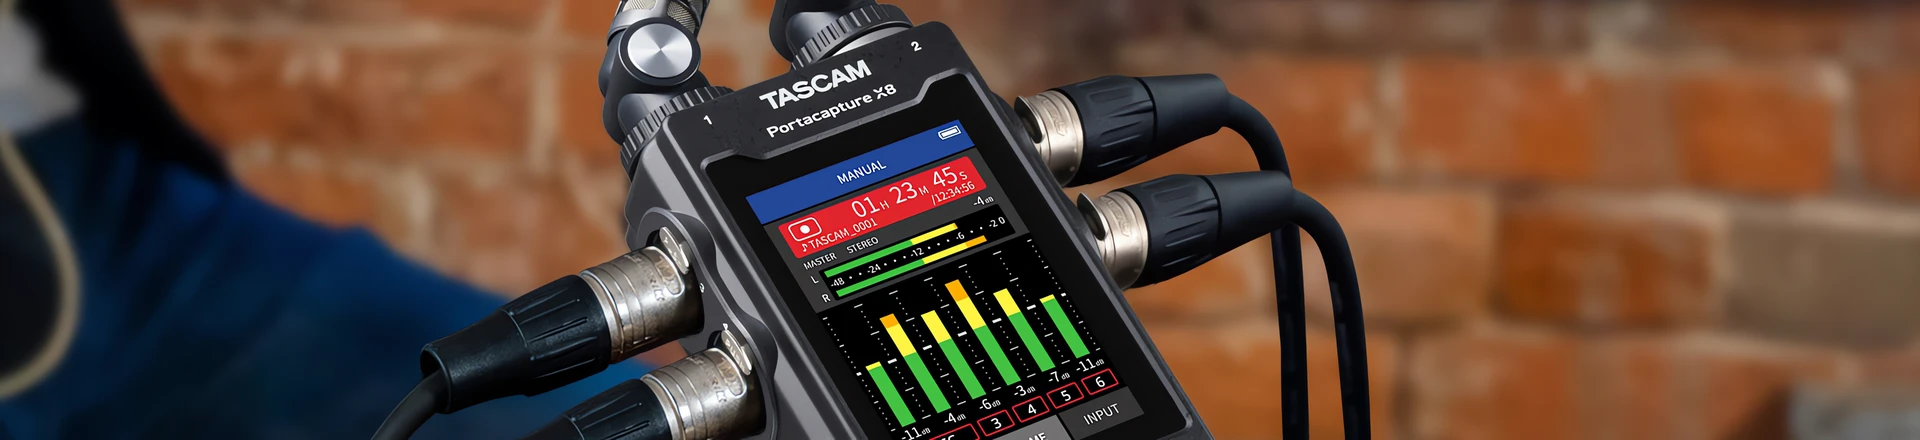 Tascam Portacapture X8: Poręczny rejestrator audio z wieloma możliwościami